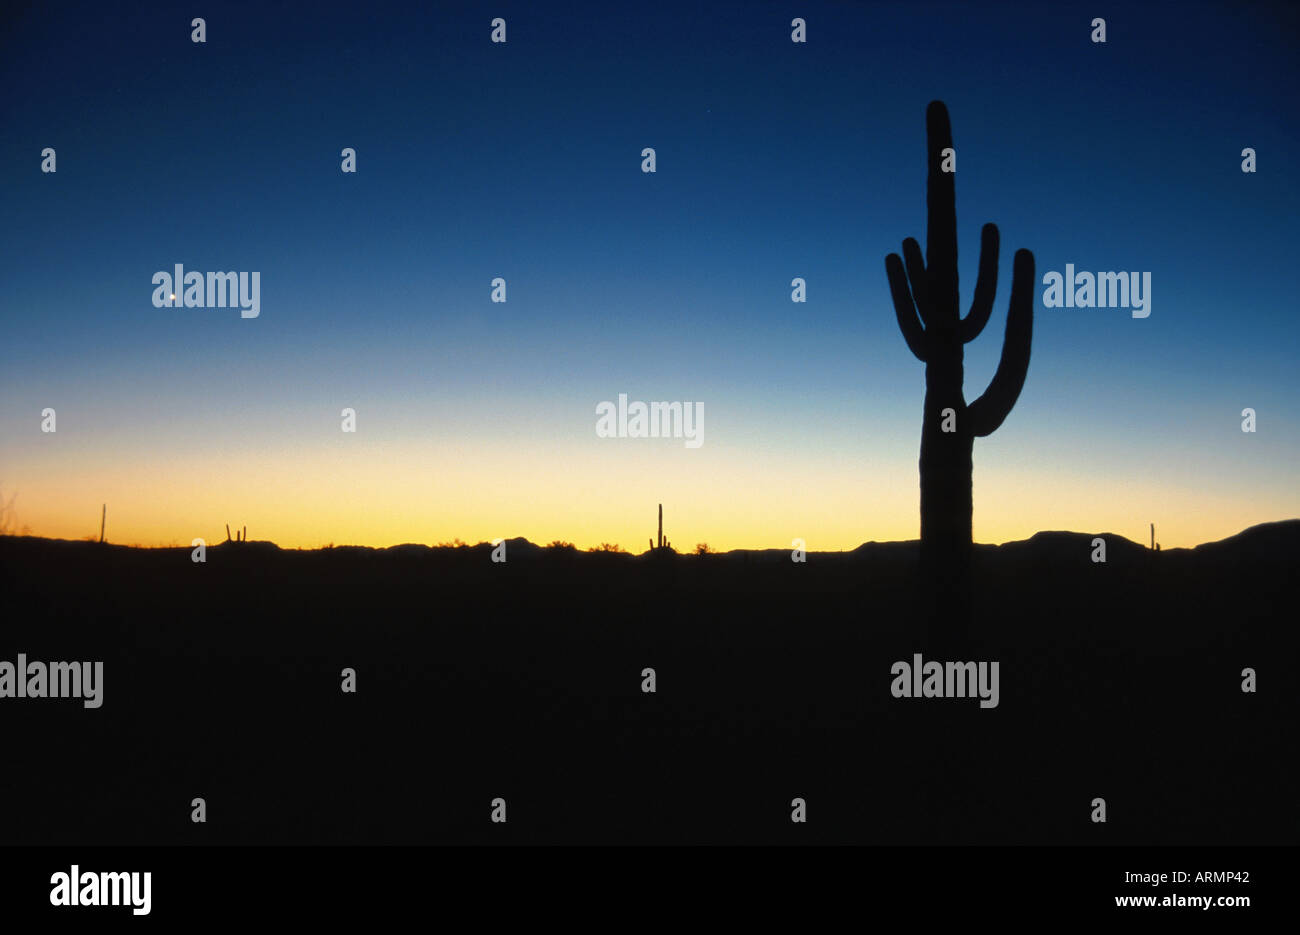 saguaro cactus (Carnegia gigantea), silhouette at dawn, USA, Arizona Stock Photo